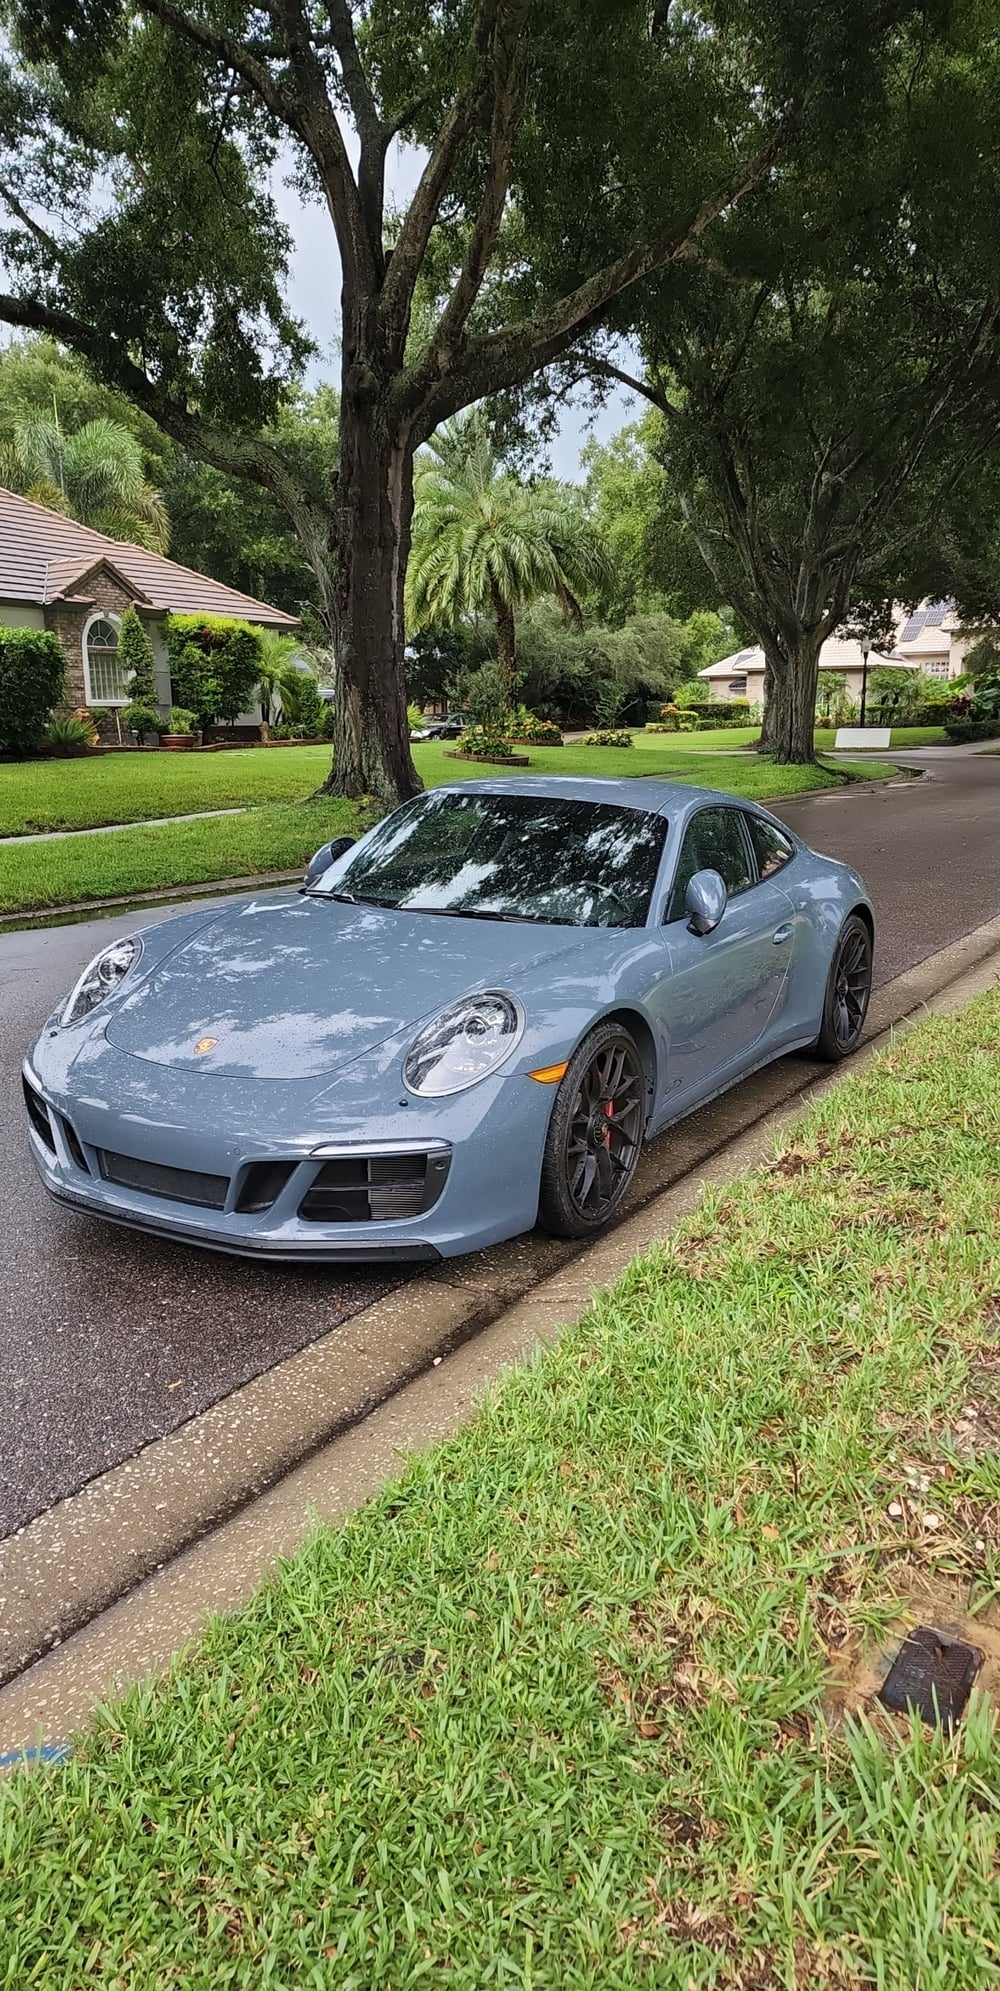 2017 Porsche 911 - 2017 991.2 14.5k miles one owner Graphite Blue Metallic Garaged in Orlando - Used - Orlando, FL 32836, United States